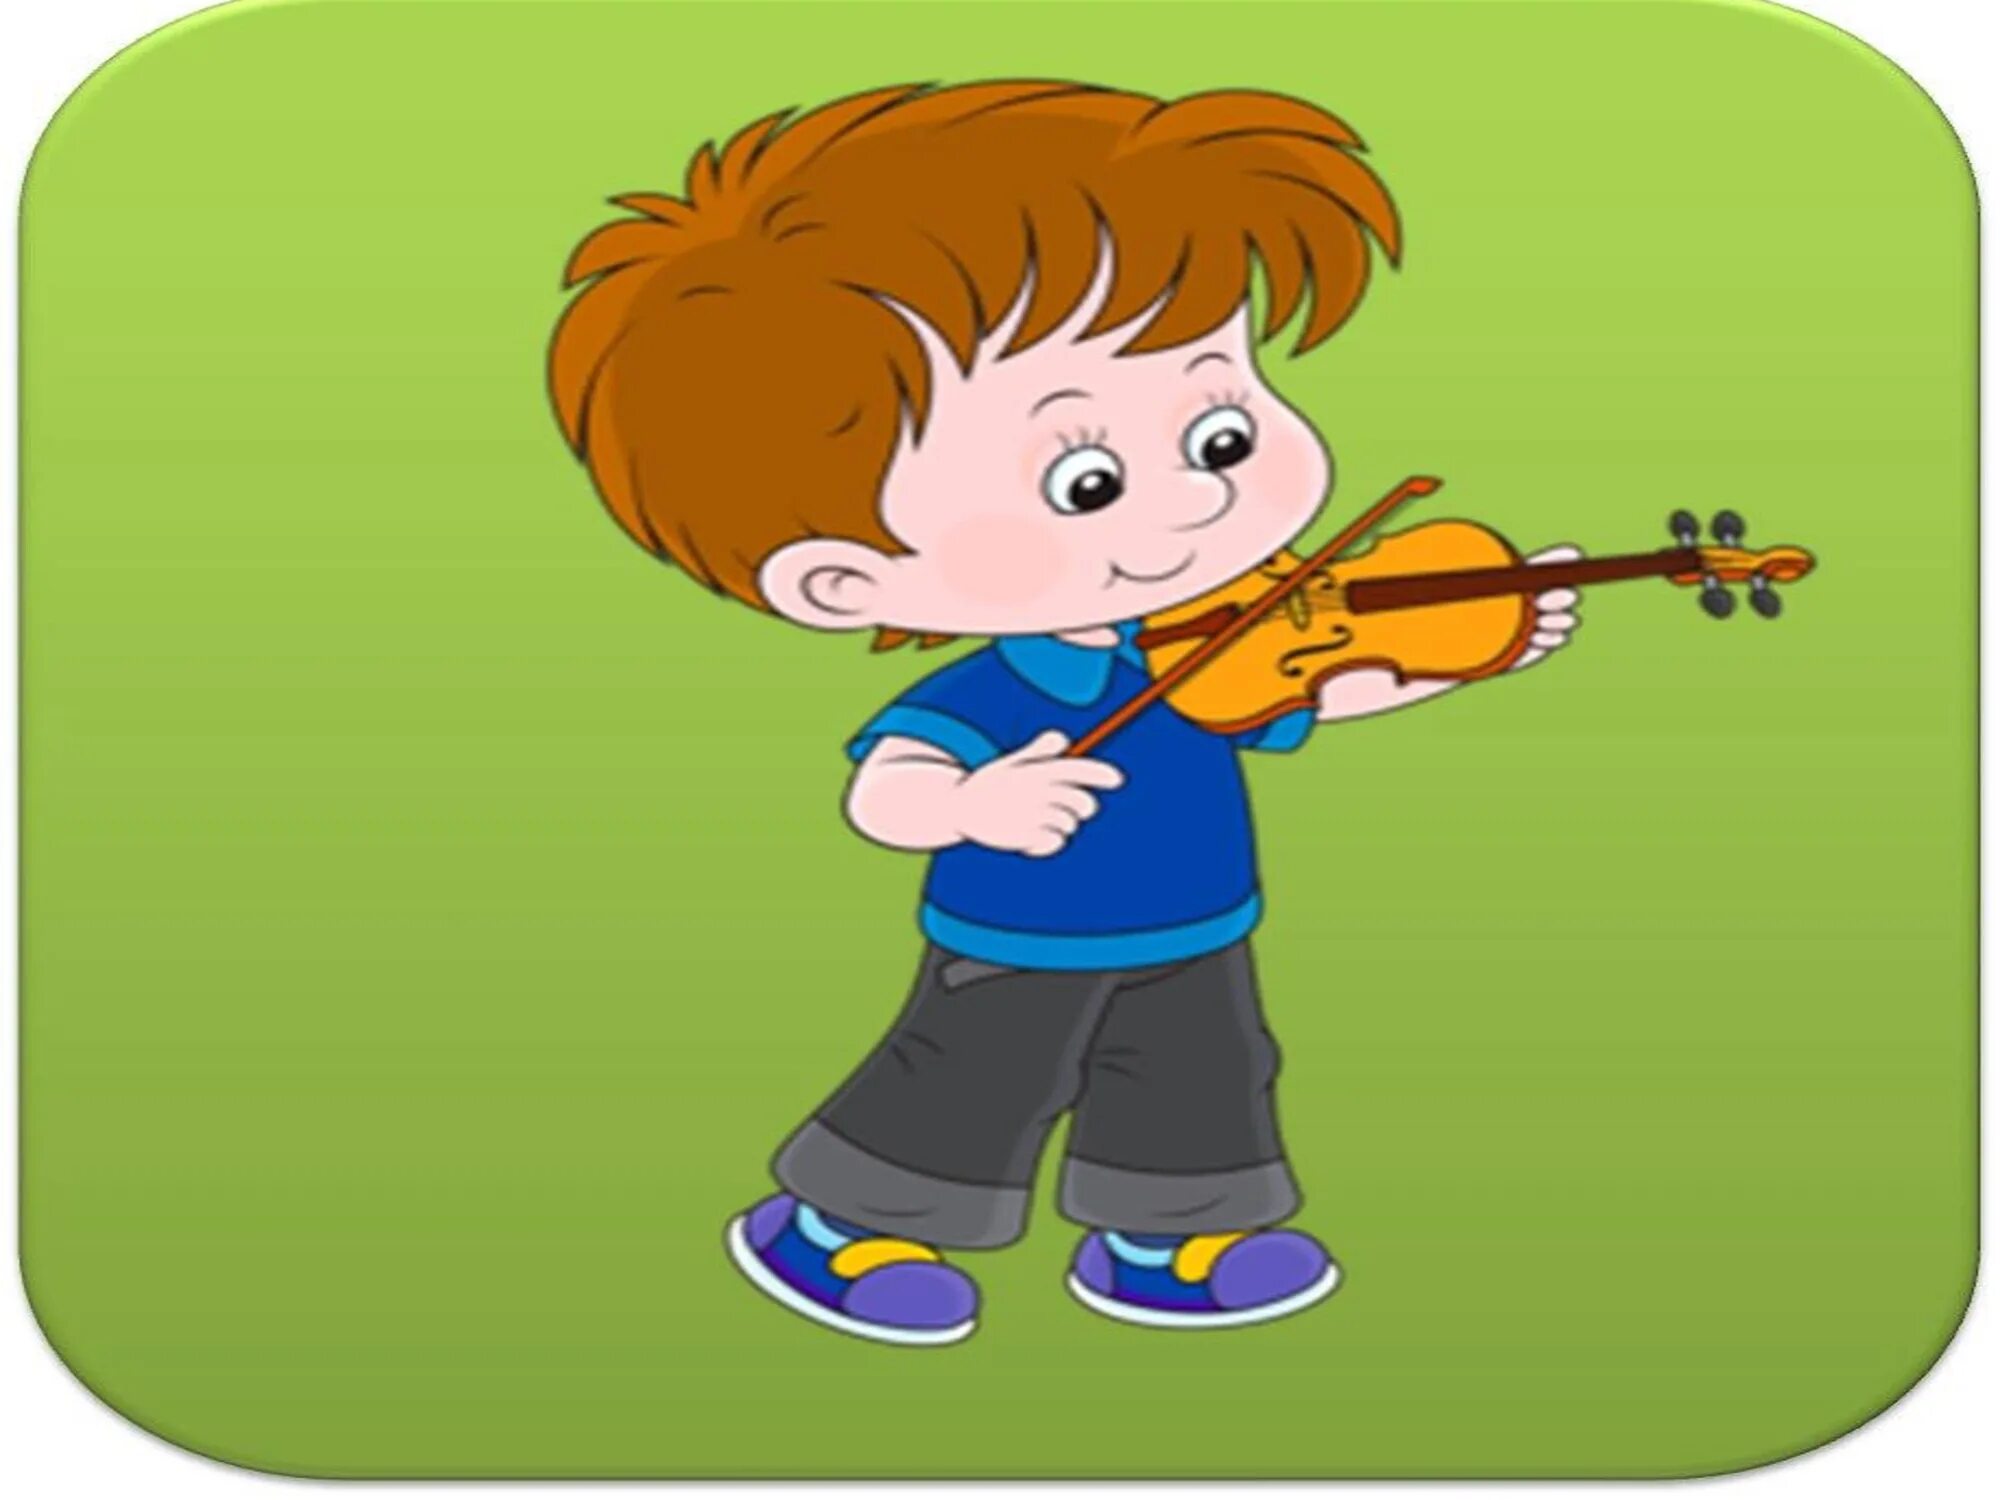 Игры музыка петь. Дети играют на музыкальных инструментах. Музыкальные картинки для детей. Нарисованные дети играют на музыкальных инструментах. Музыкальные инструменты для детей.